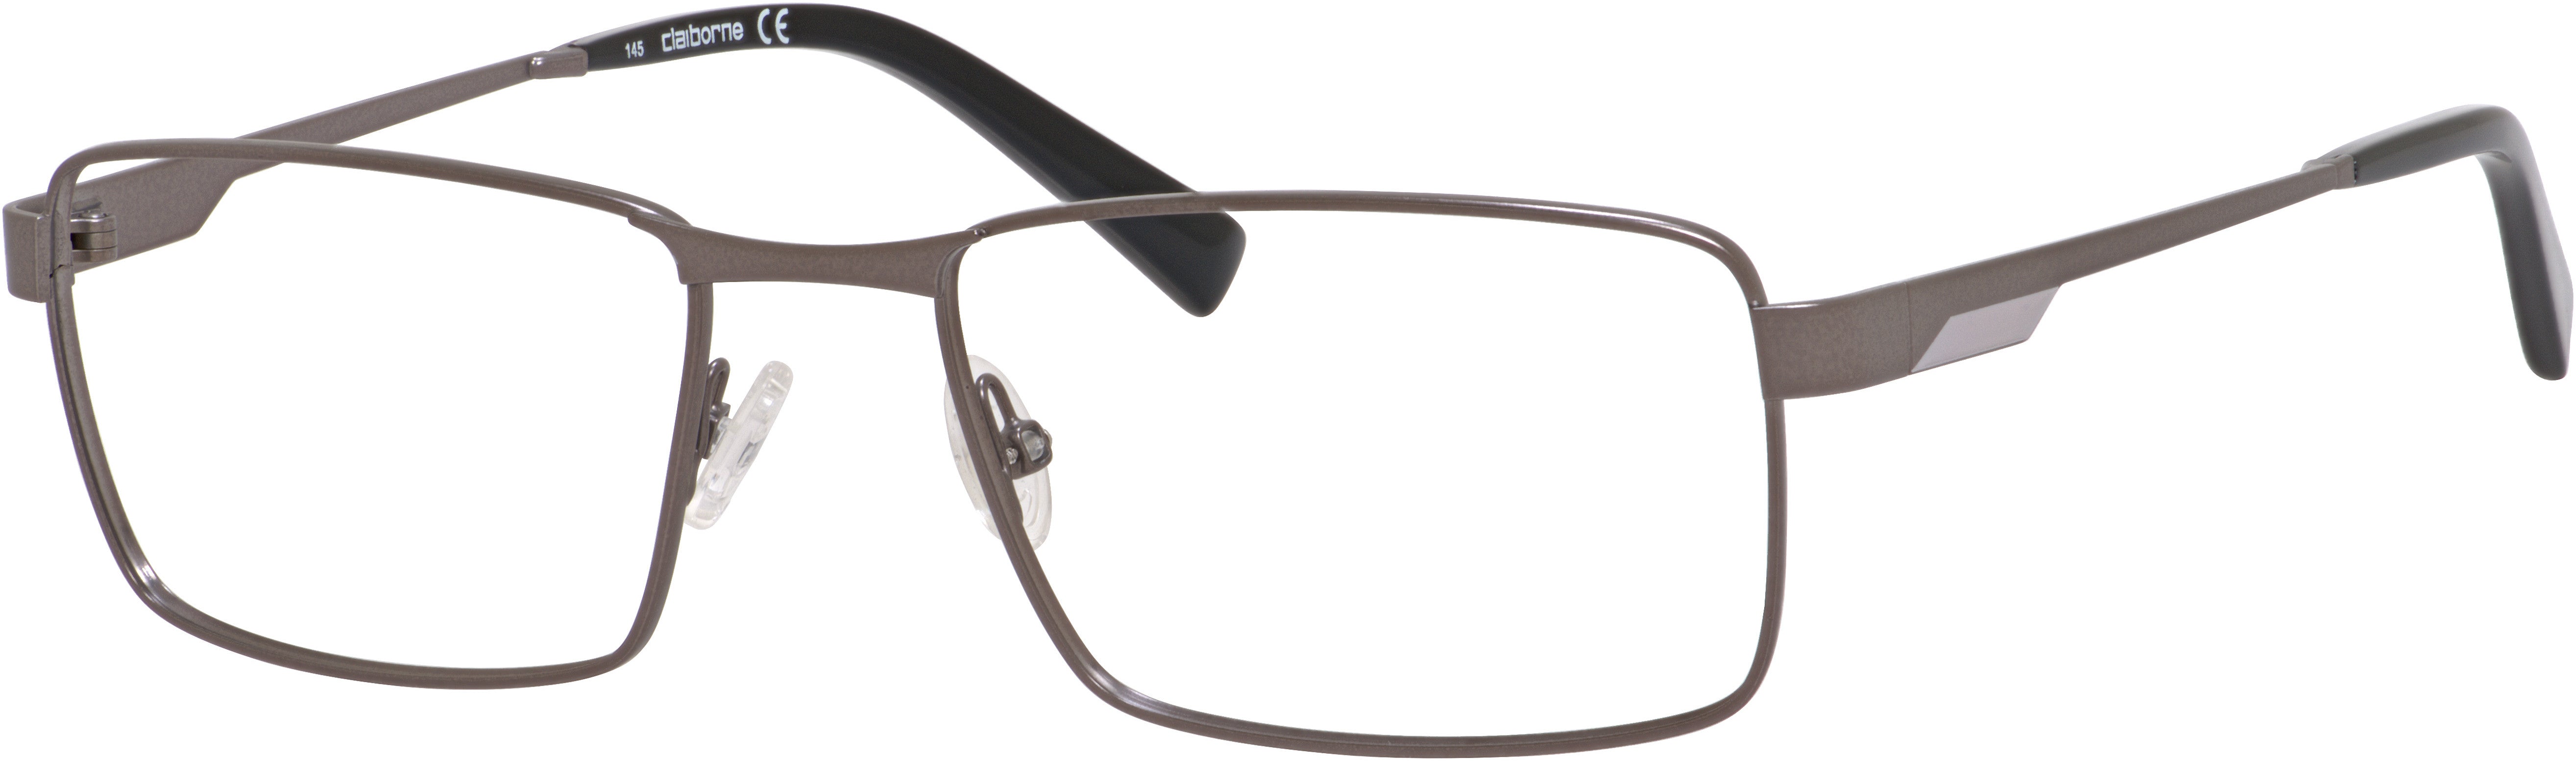  Claiborne 232XL Rectangular Eyeglasses 0UA2-0UA2  Gunmetal (00 Demo Lens)